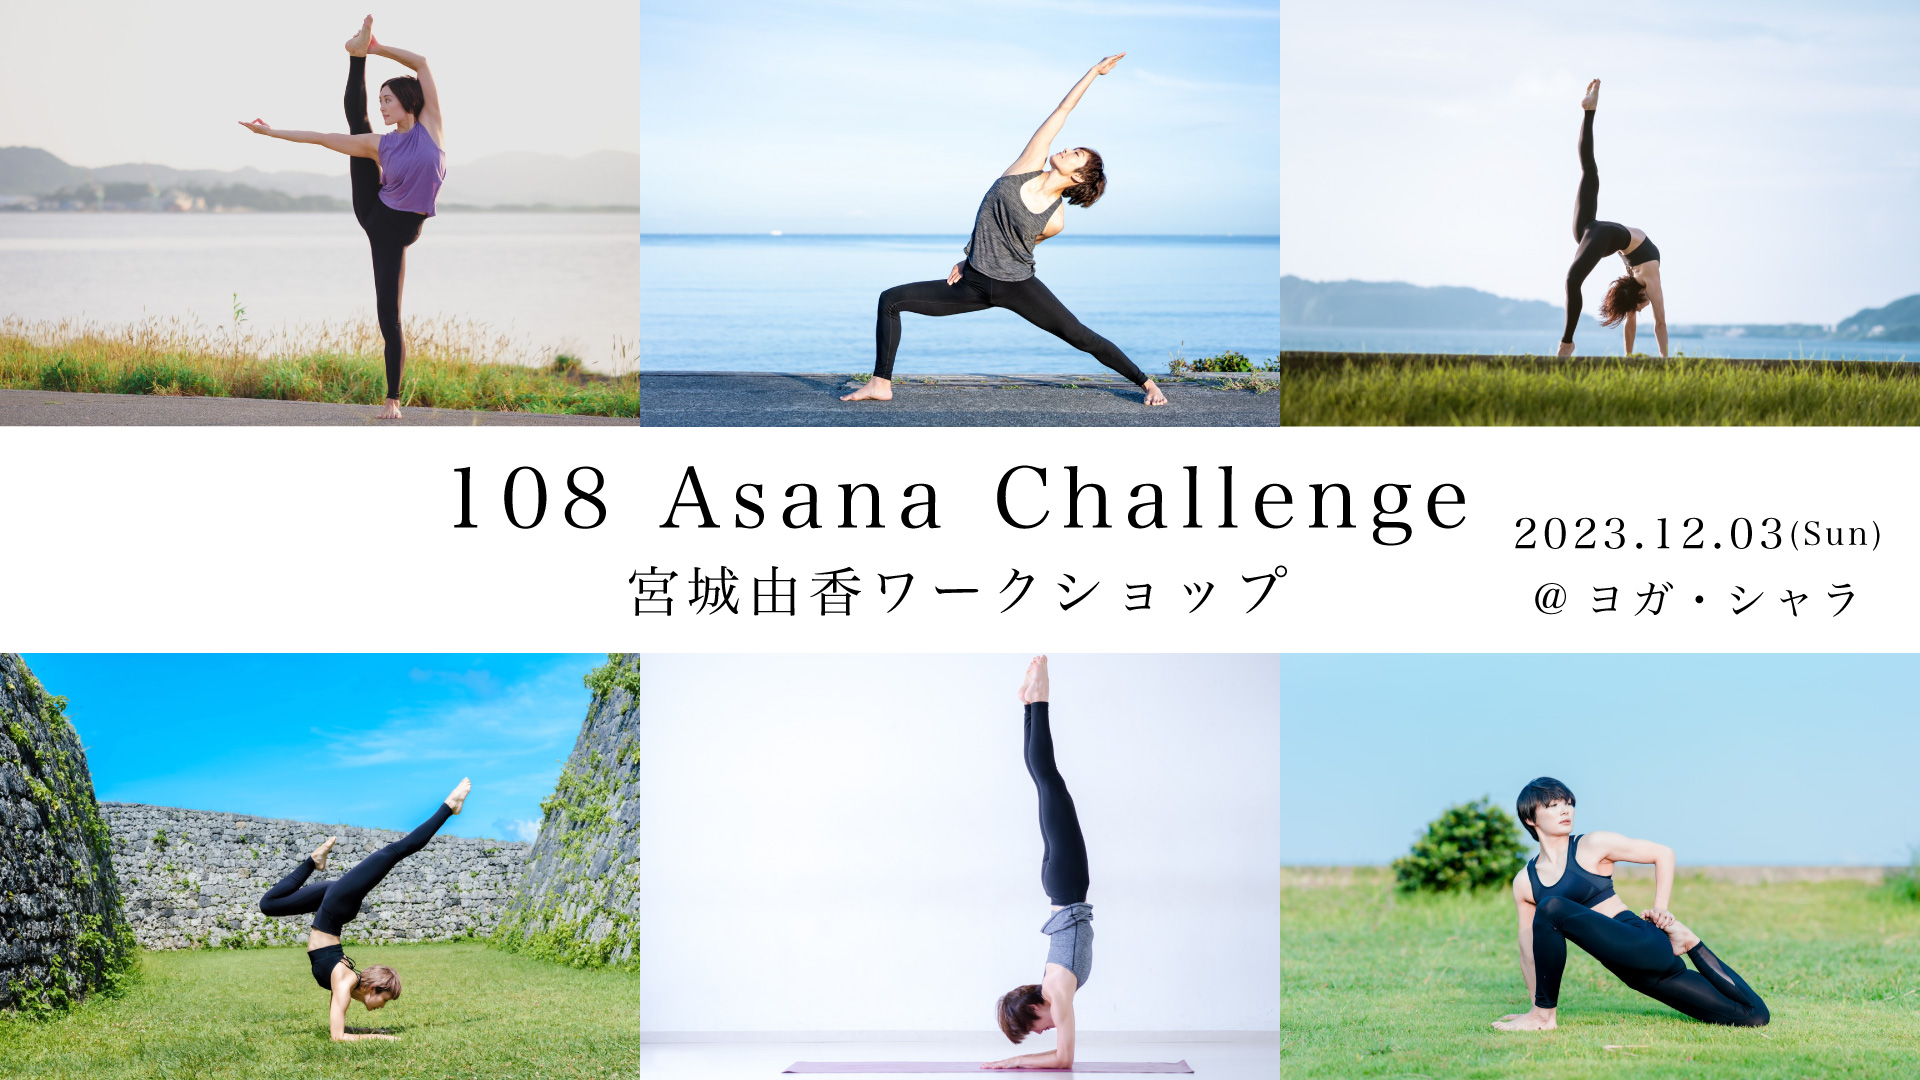 宮城由香「108 Asana Challenge」ワークショップ